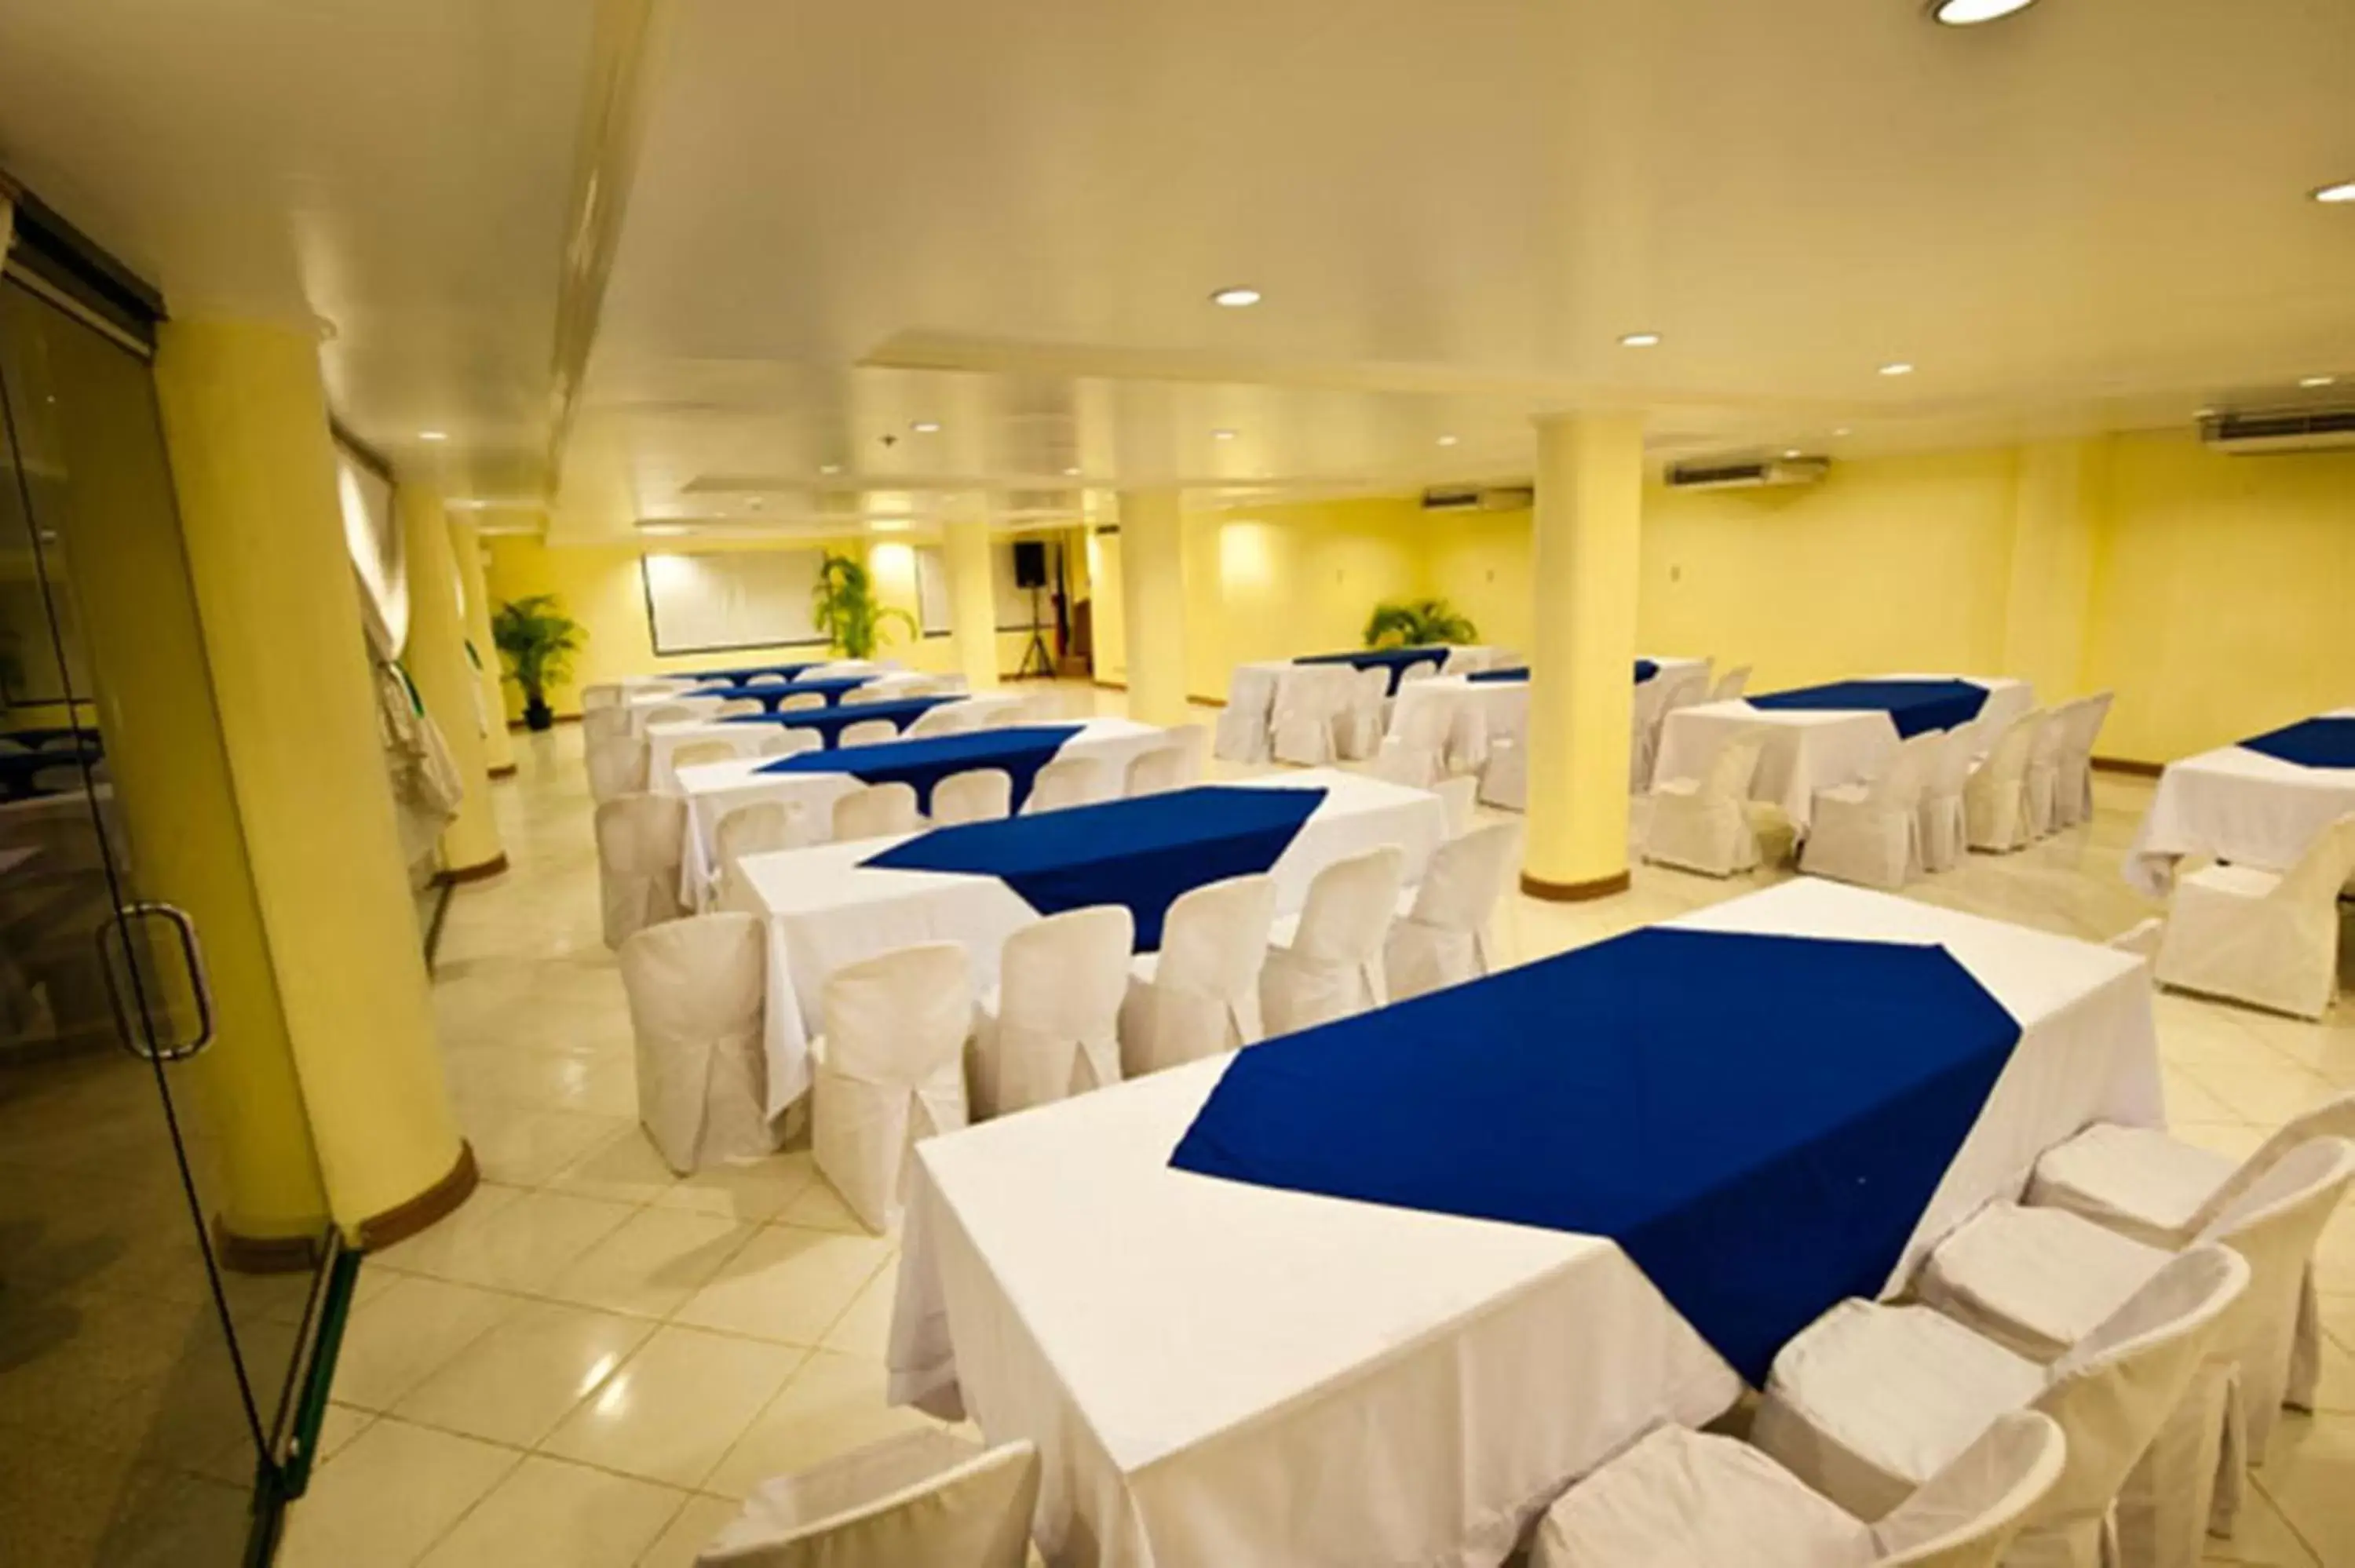 Banquet/Function facilities, Banquet Facilities in Hotel Fleuris